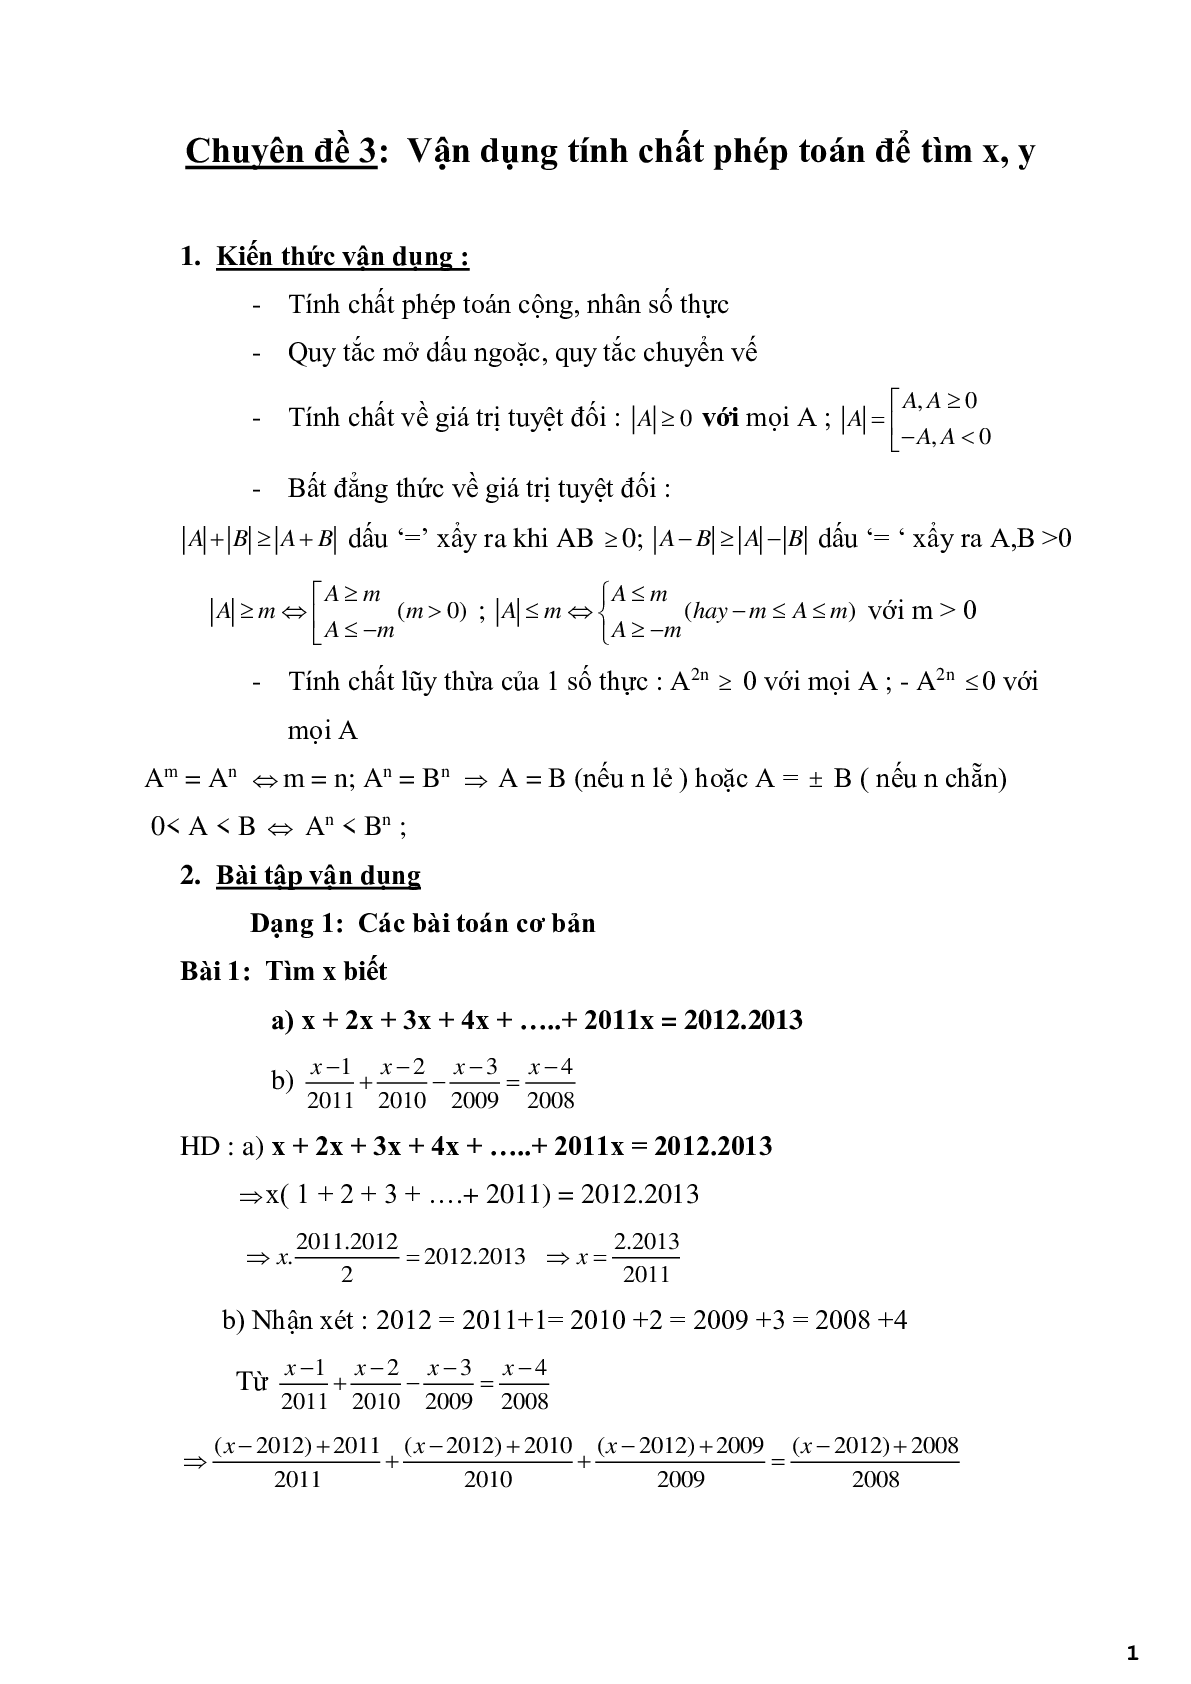 Chuyên đề 3 - Vận dụng tính chất phép toán để tìm x, y - có đáp án (trang 1)